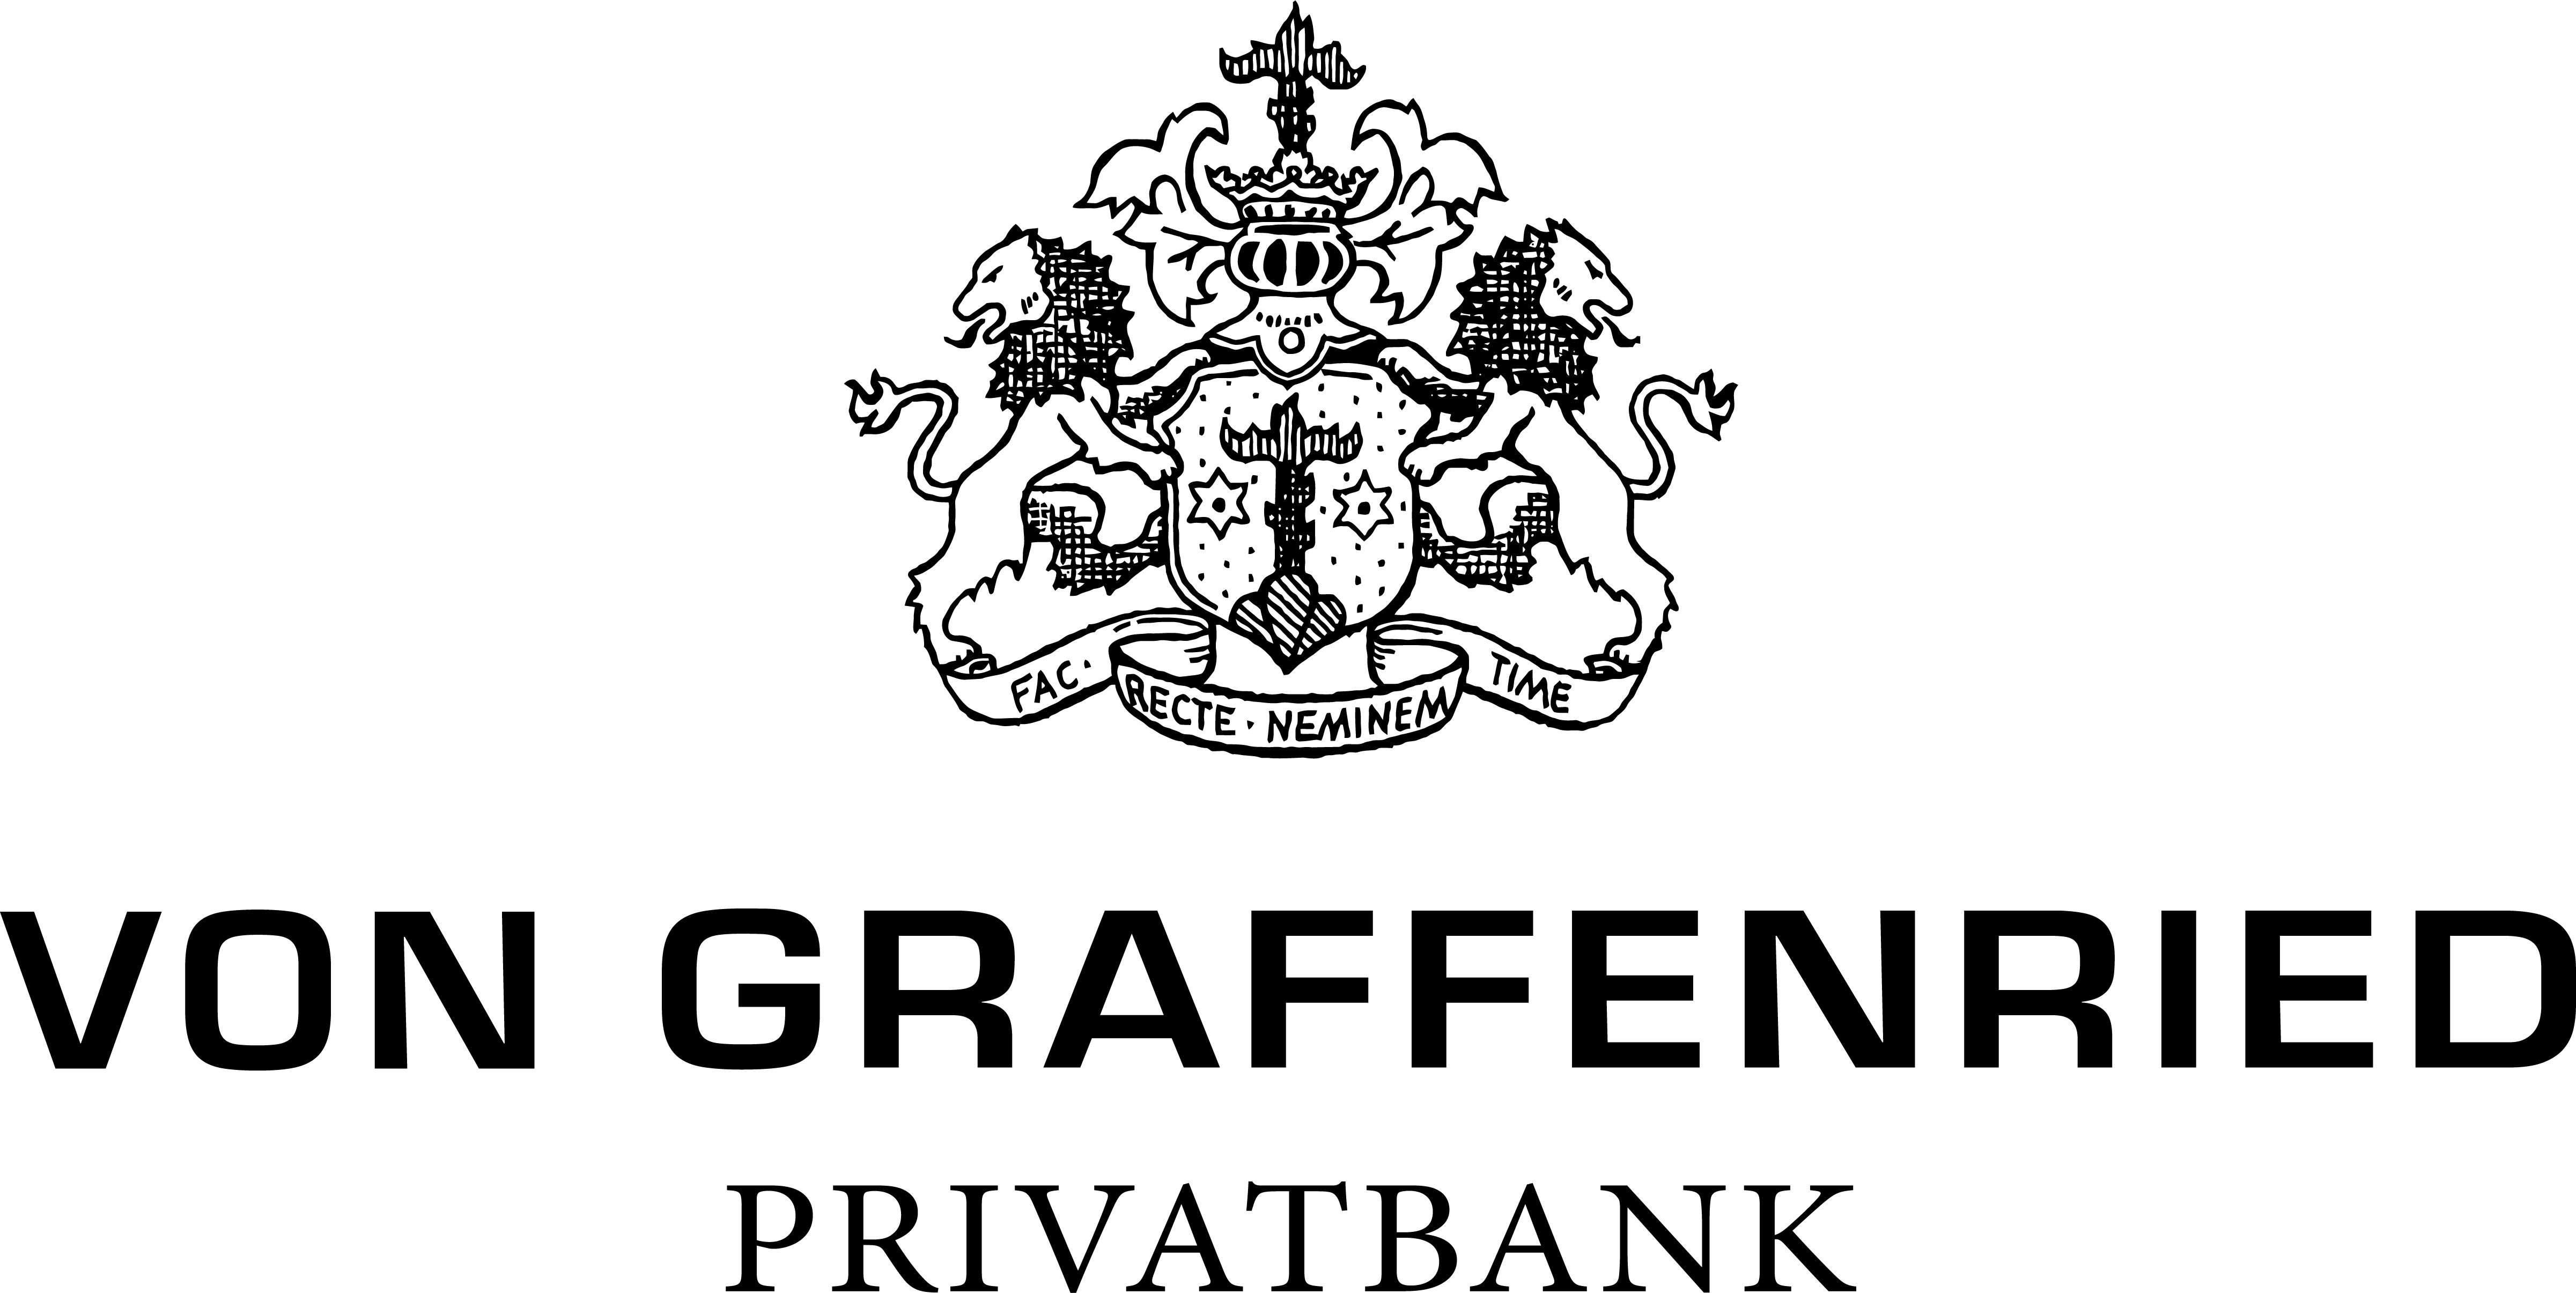 Logo Privatbank Von Graffenried AG